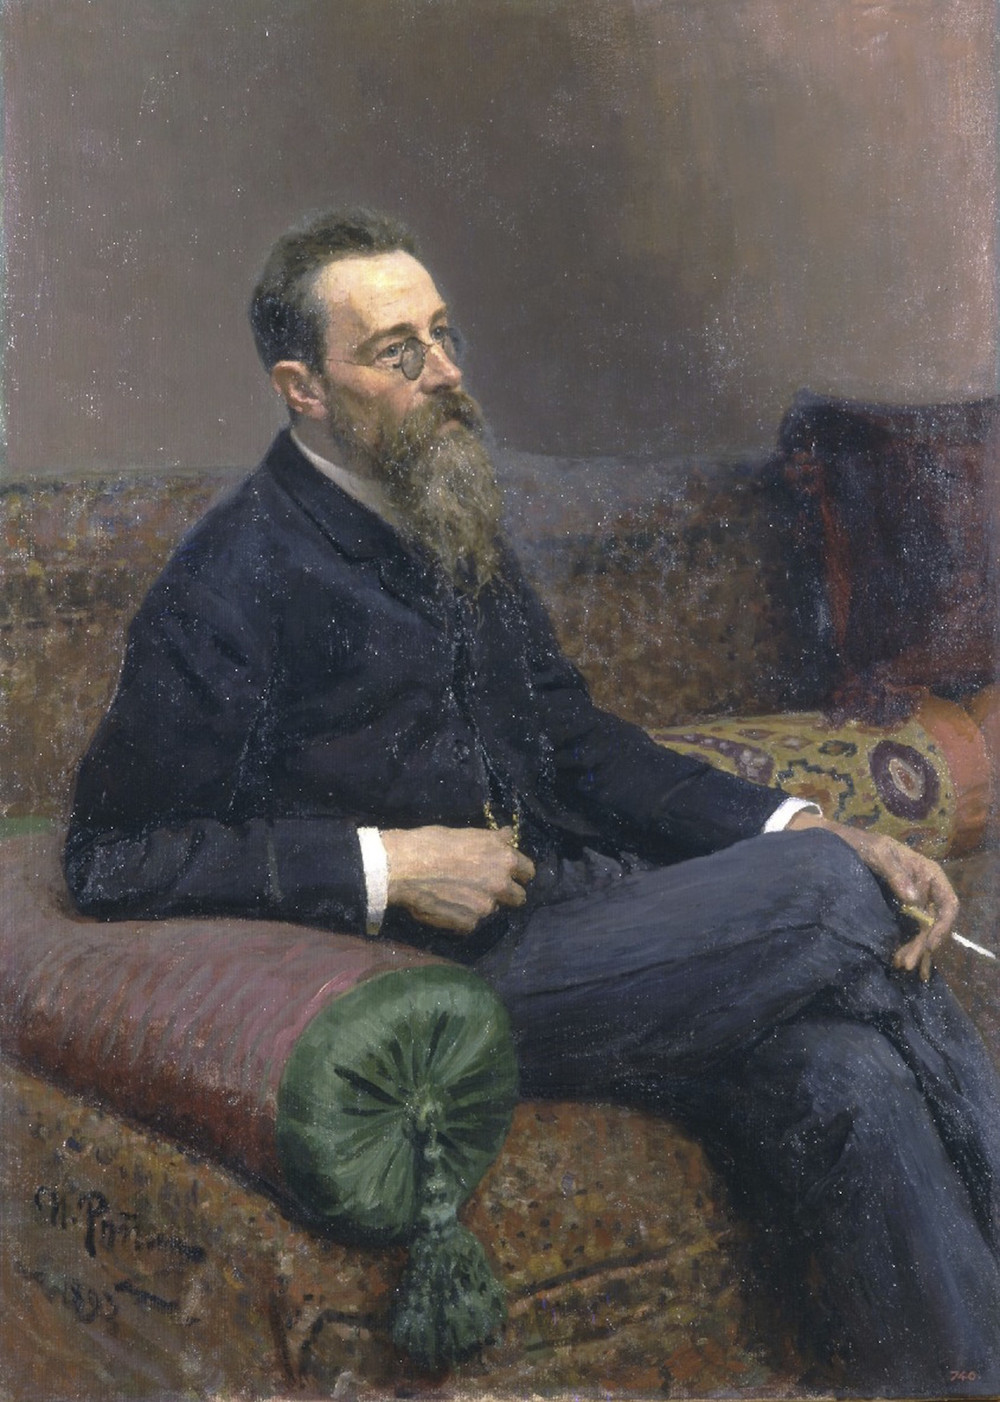 Nikolai+Rimsky-Korsakov